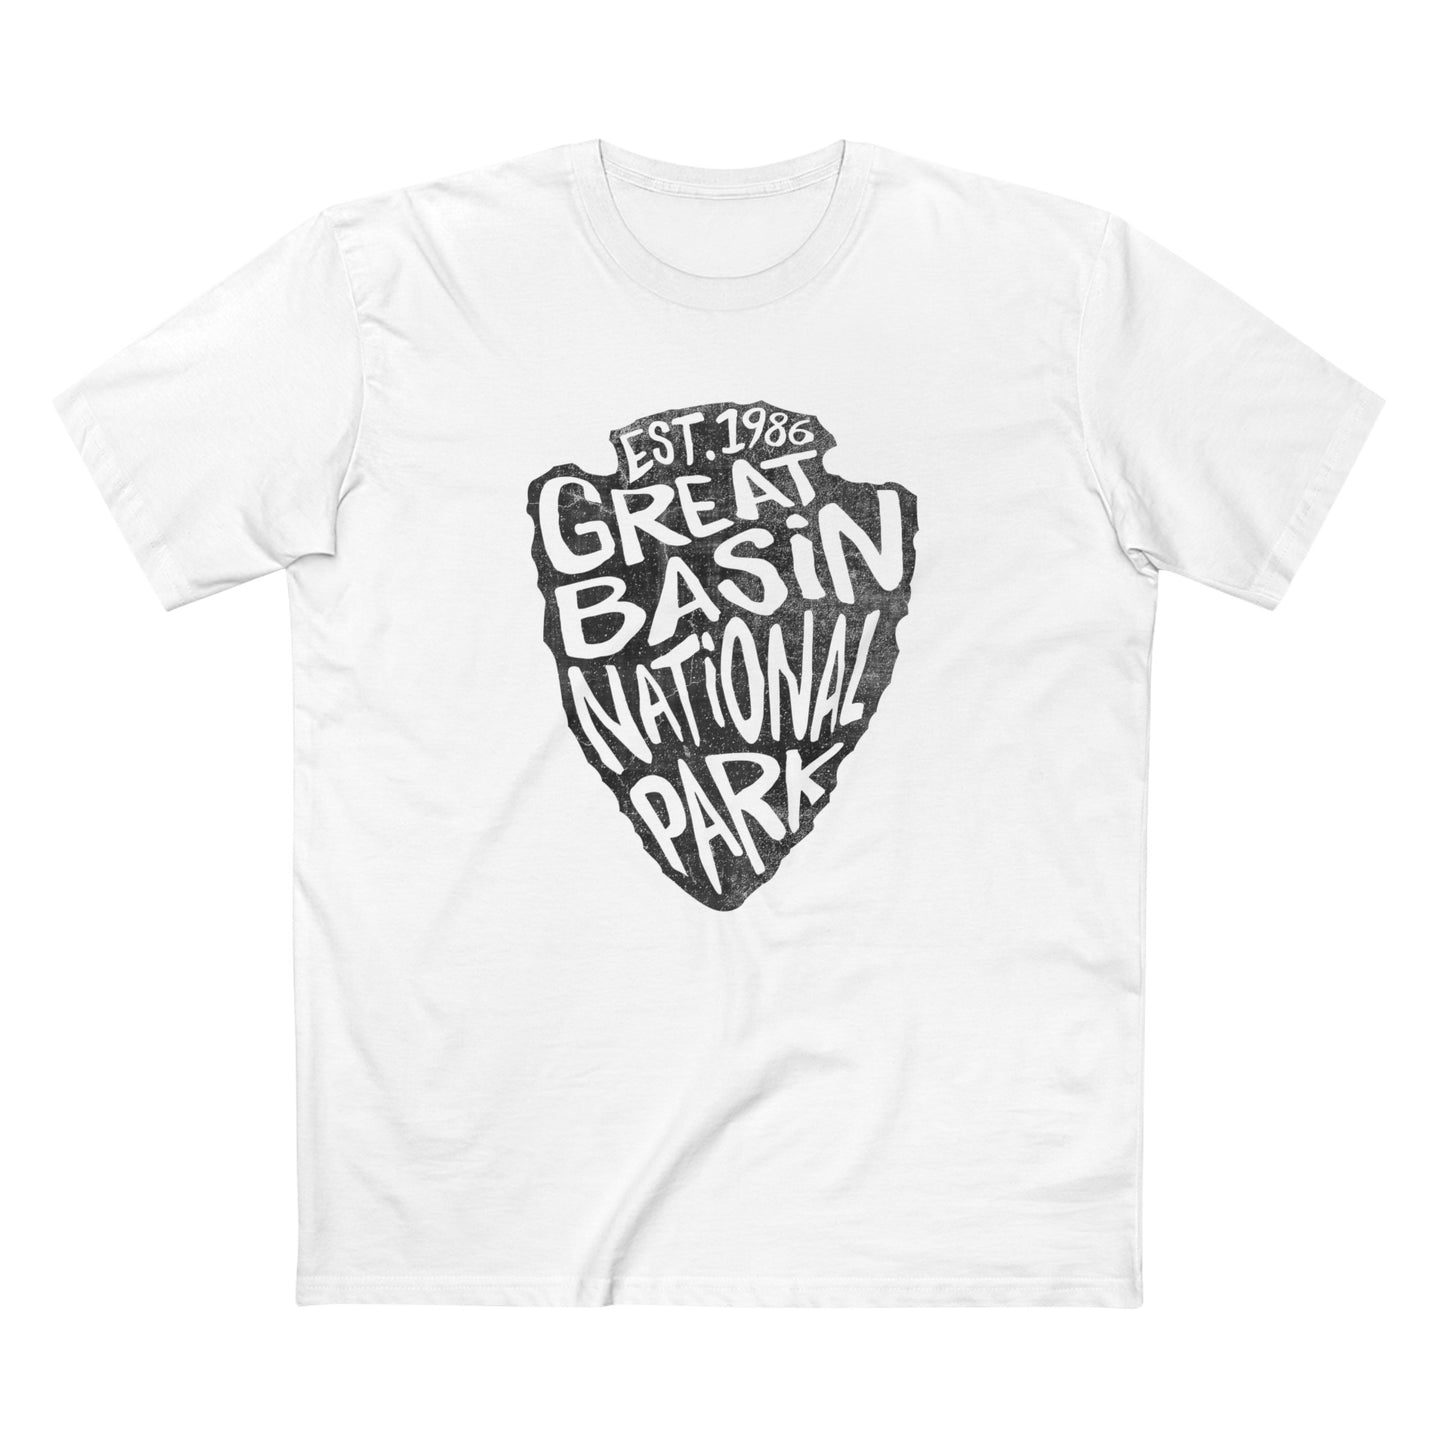 Great Basin National Park T-Shirt - Arrowhead Design